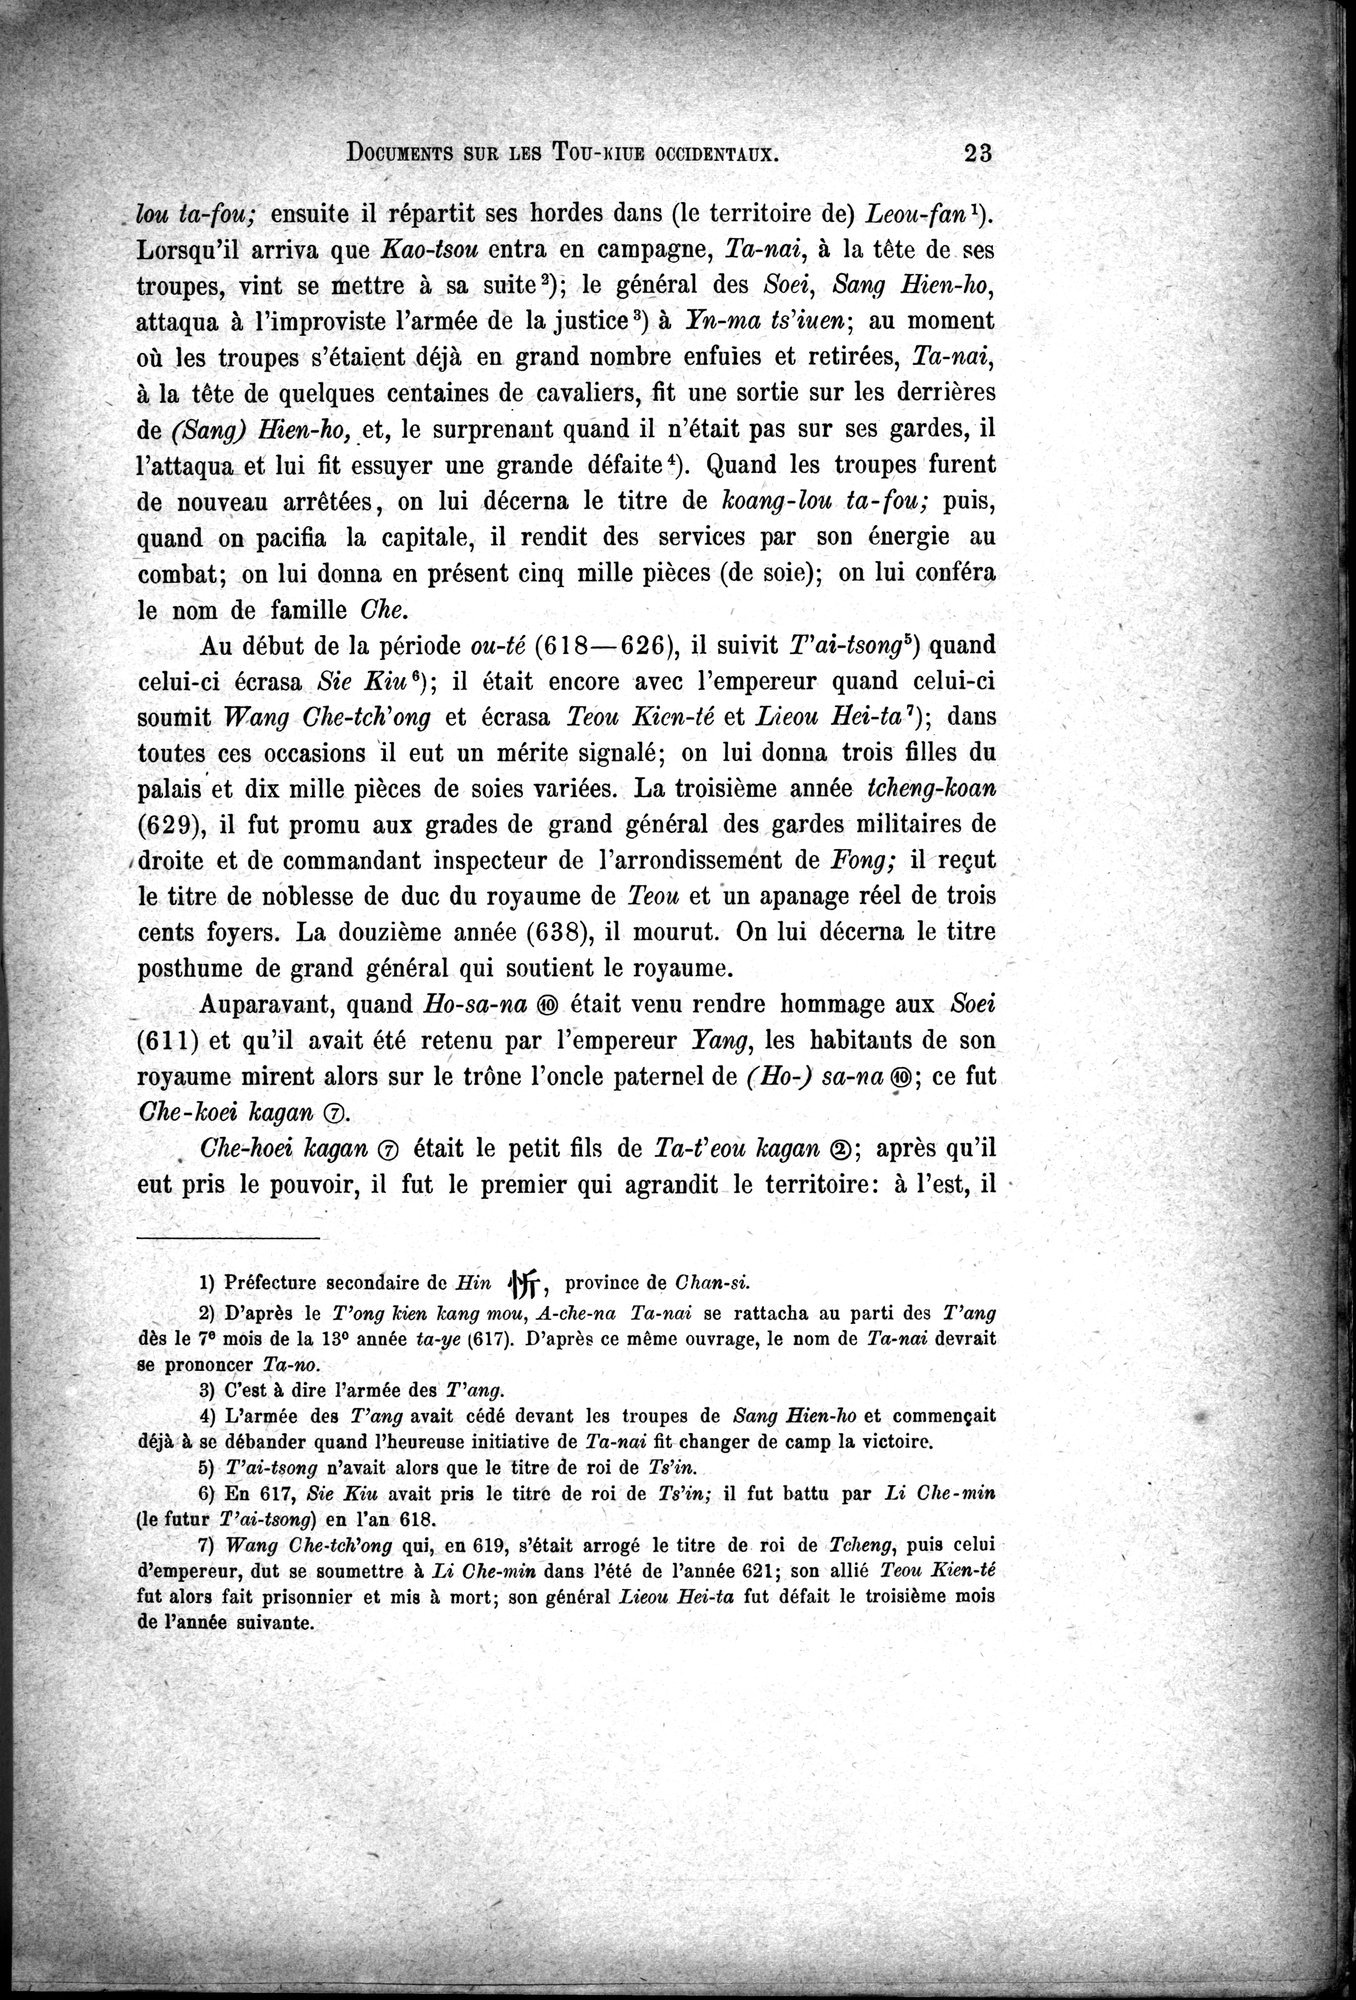 Documents sur les Tou-kiue (Turcs) occidentaux : vol.1 / Page 33 (Grayscale High Resolution Image)